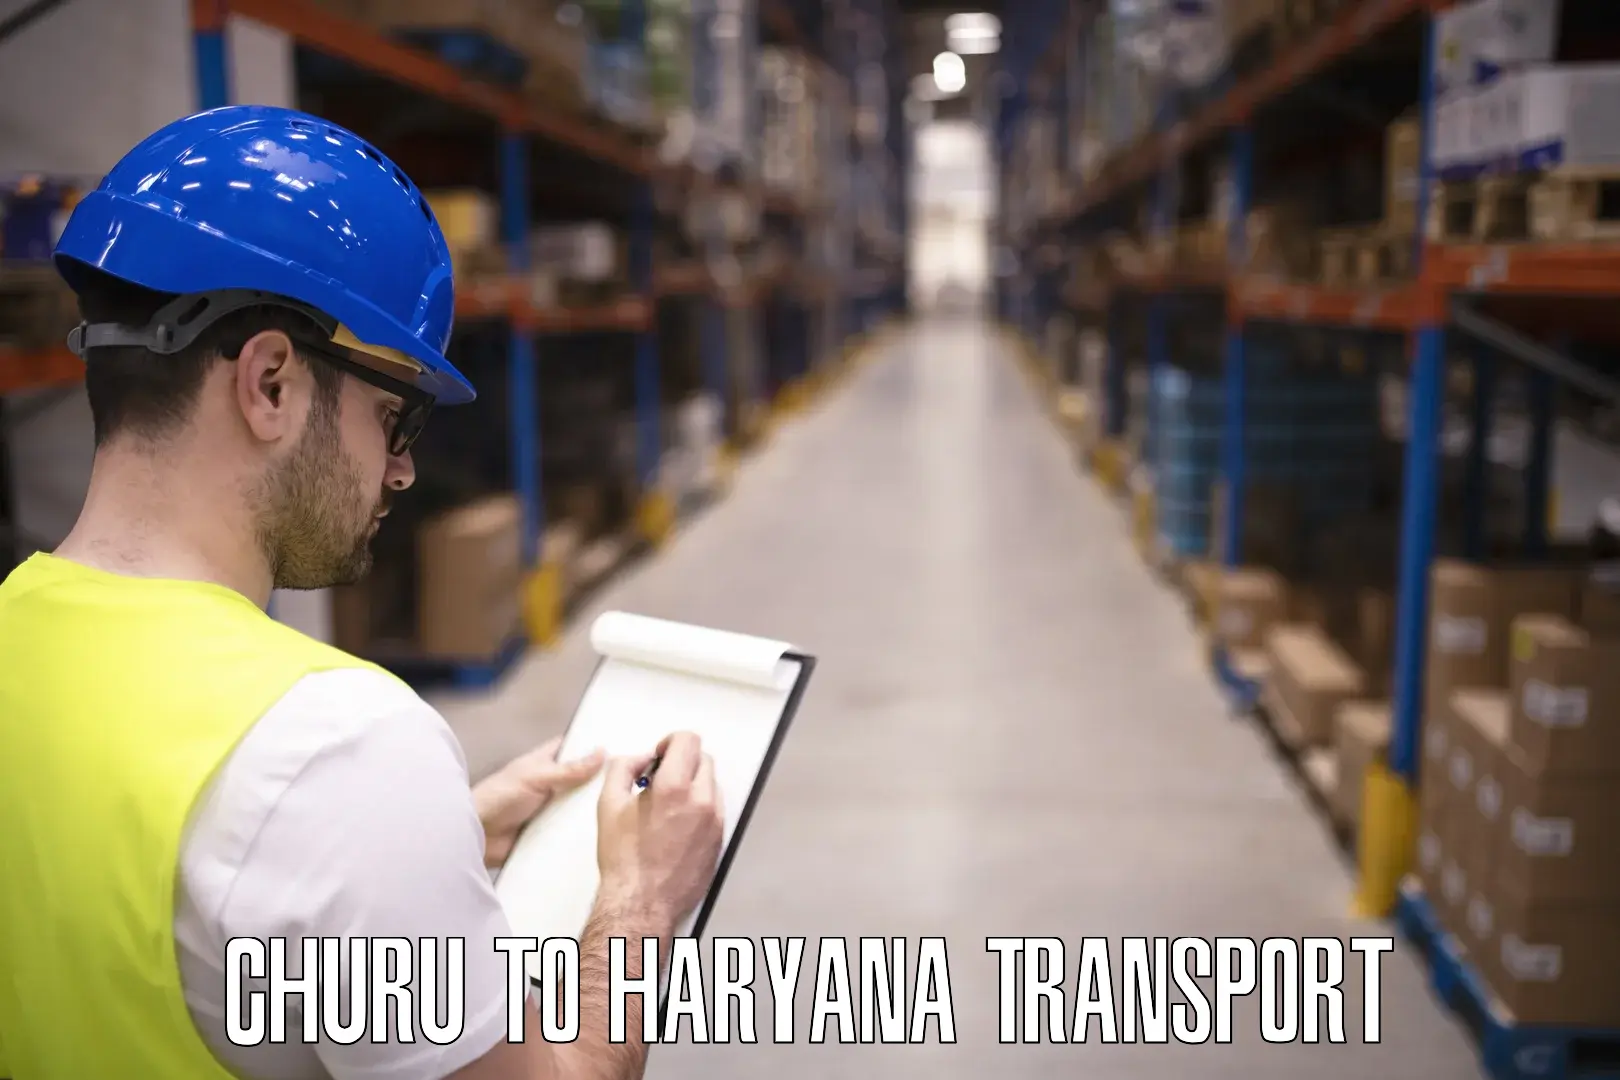 Truck transport companies in India Churu to Kurukshetra